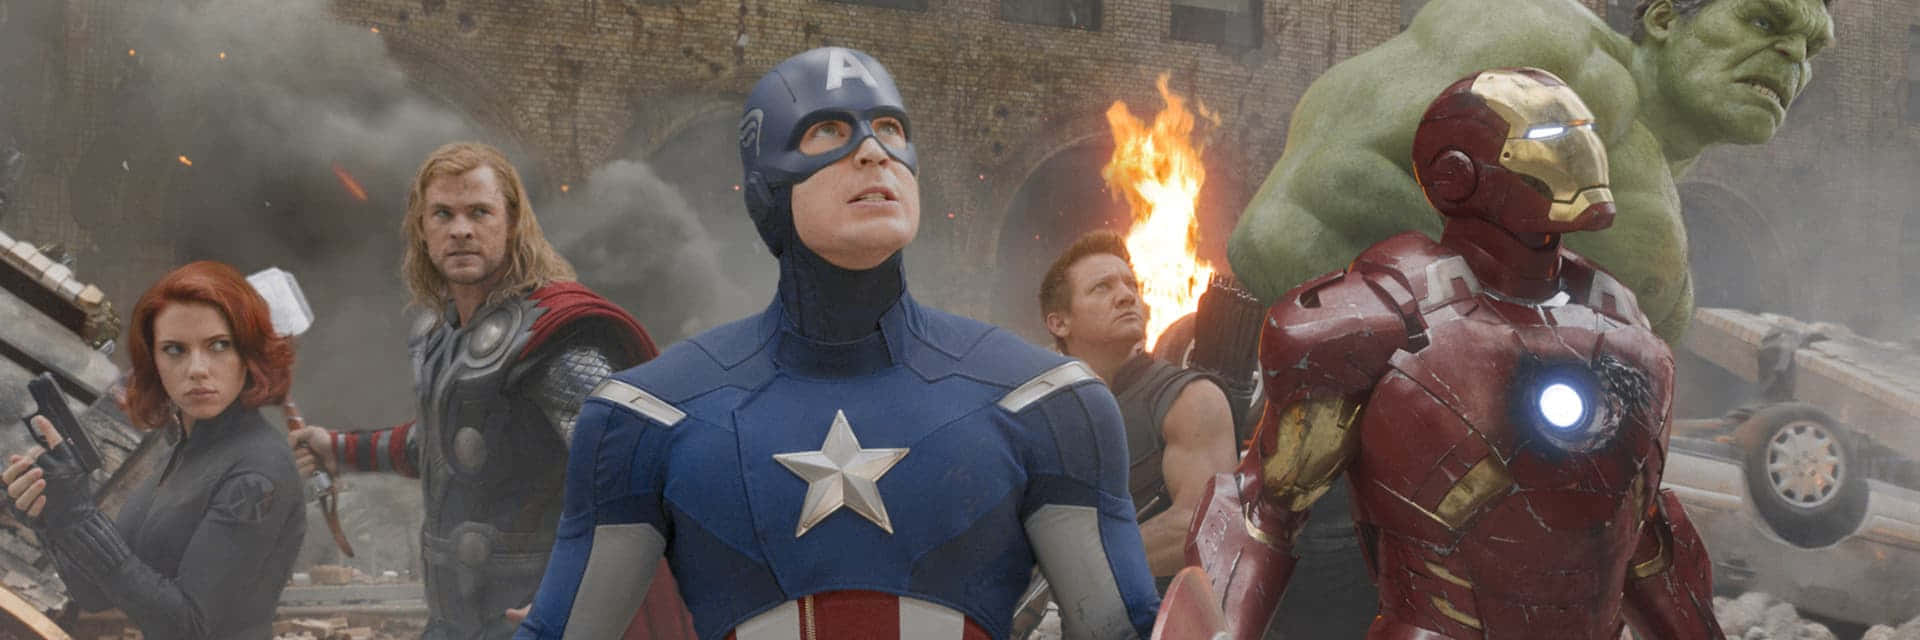 Einteam Von Avengers Schließt Sich Zusammen Und Arbeitet Zusammen, Um Die Welt Zu Retten.